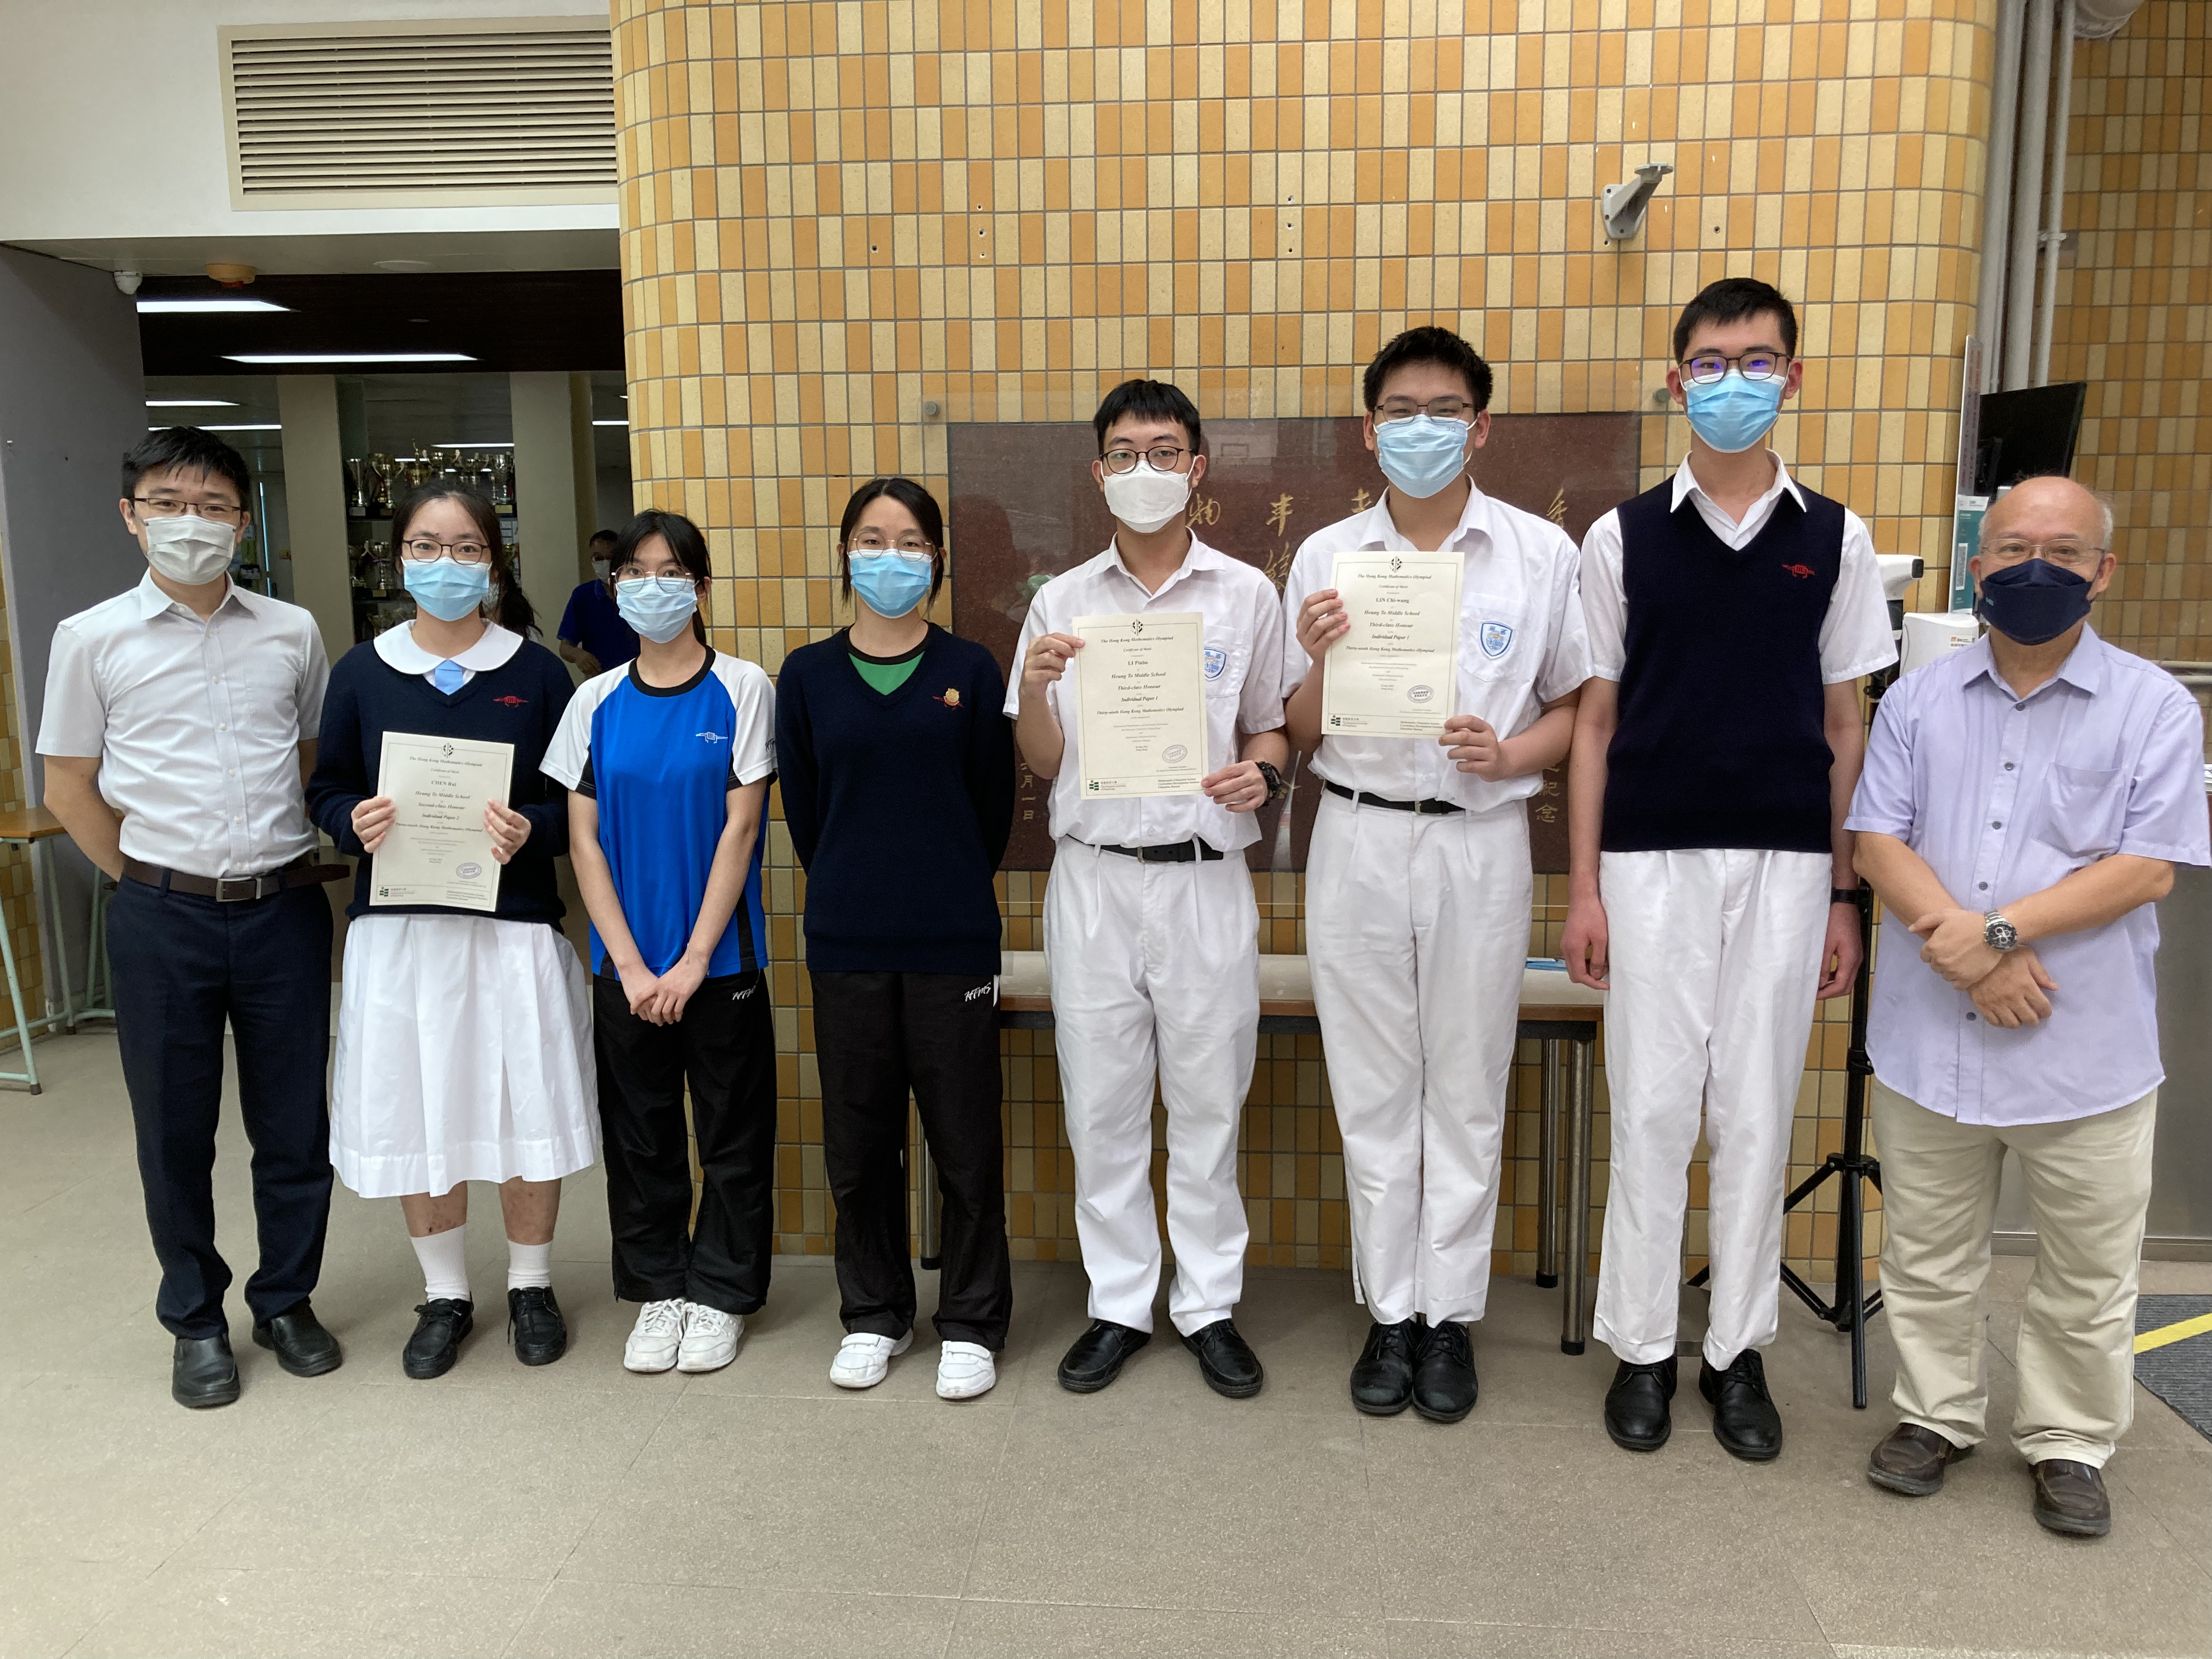 本校同學參加「第三十九屆香港數學競賽」獲獎